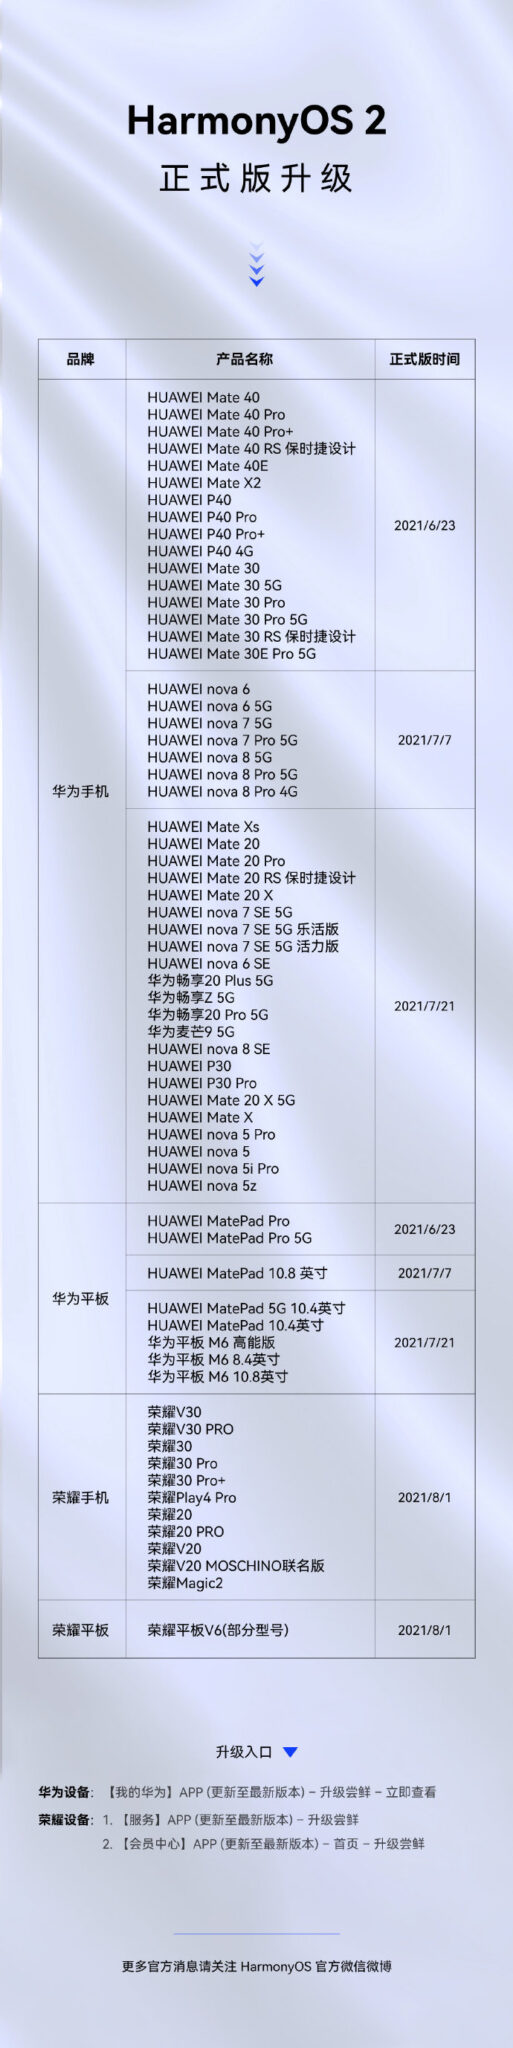 65 urządzeń Huawei i Honor otrzymało już stabilny system HarmonyOS 2.0 - oficjalna lista